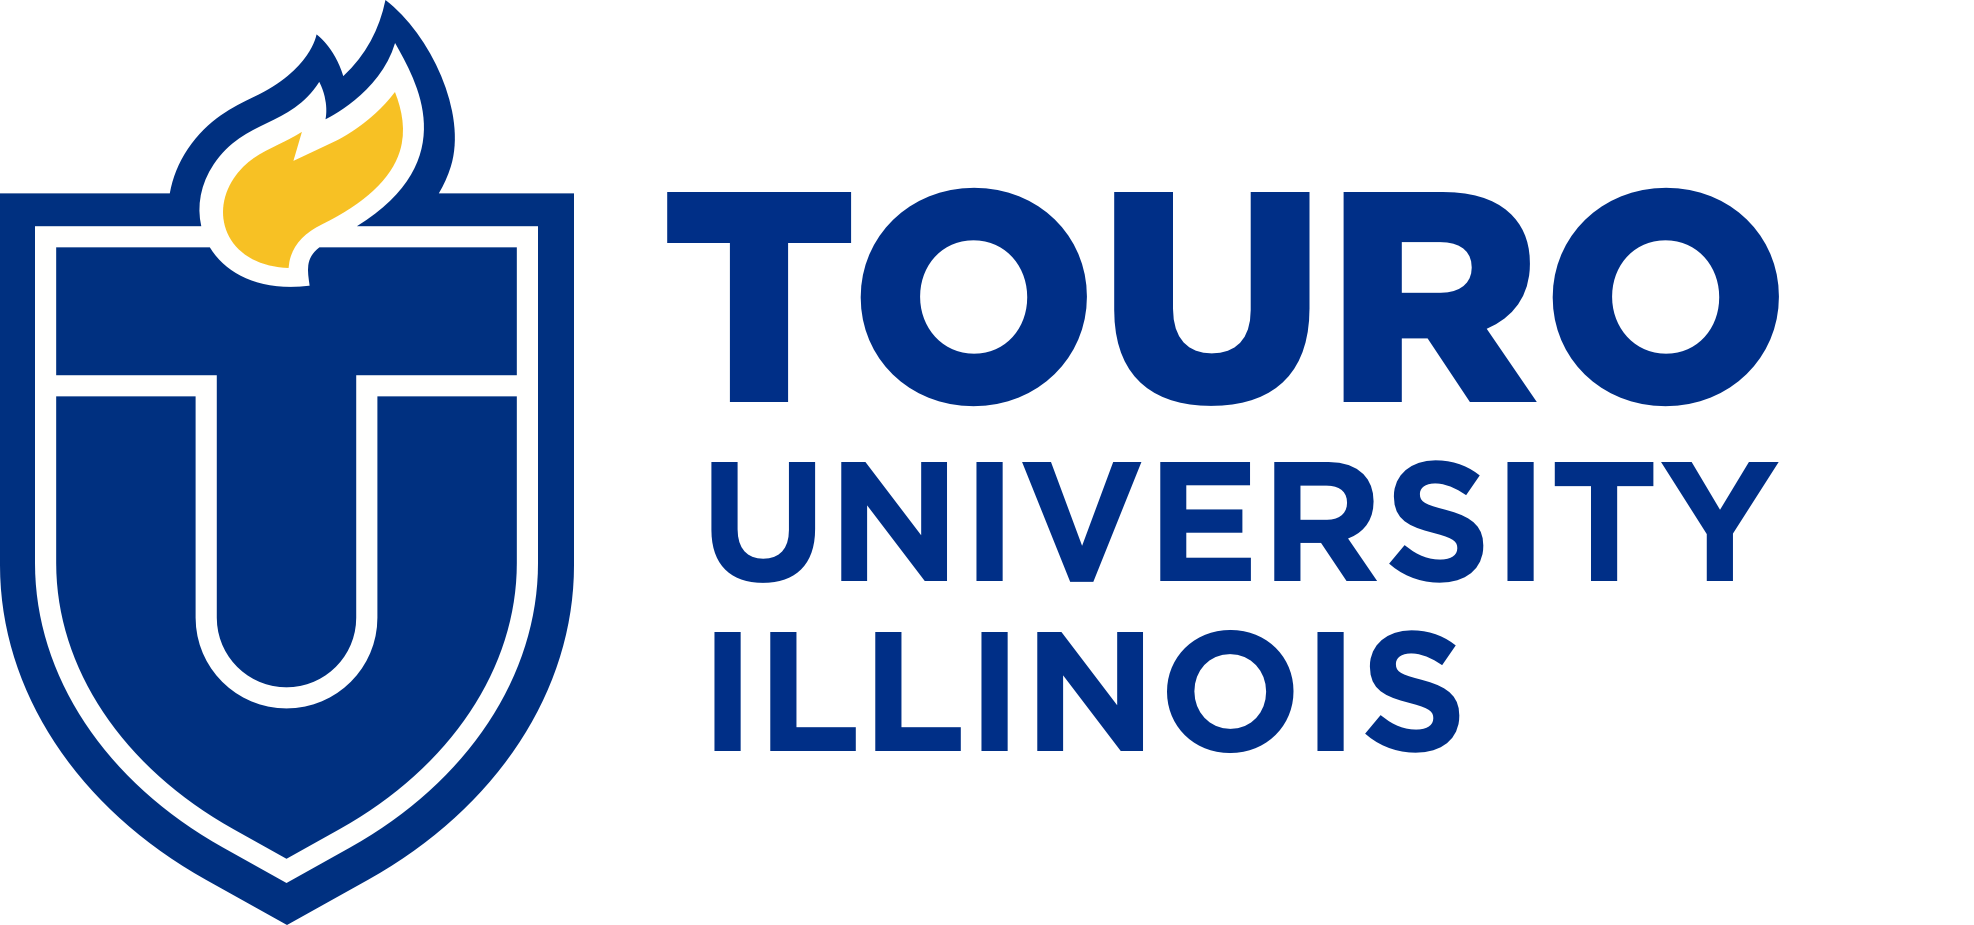 Touro University Illinois